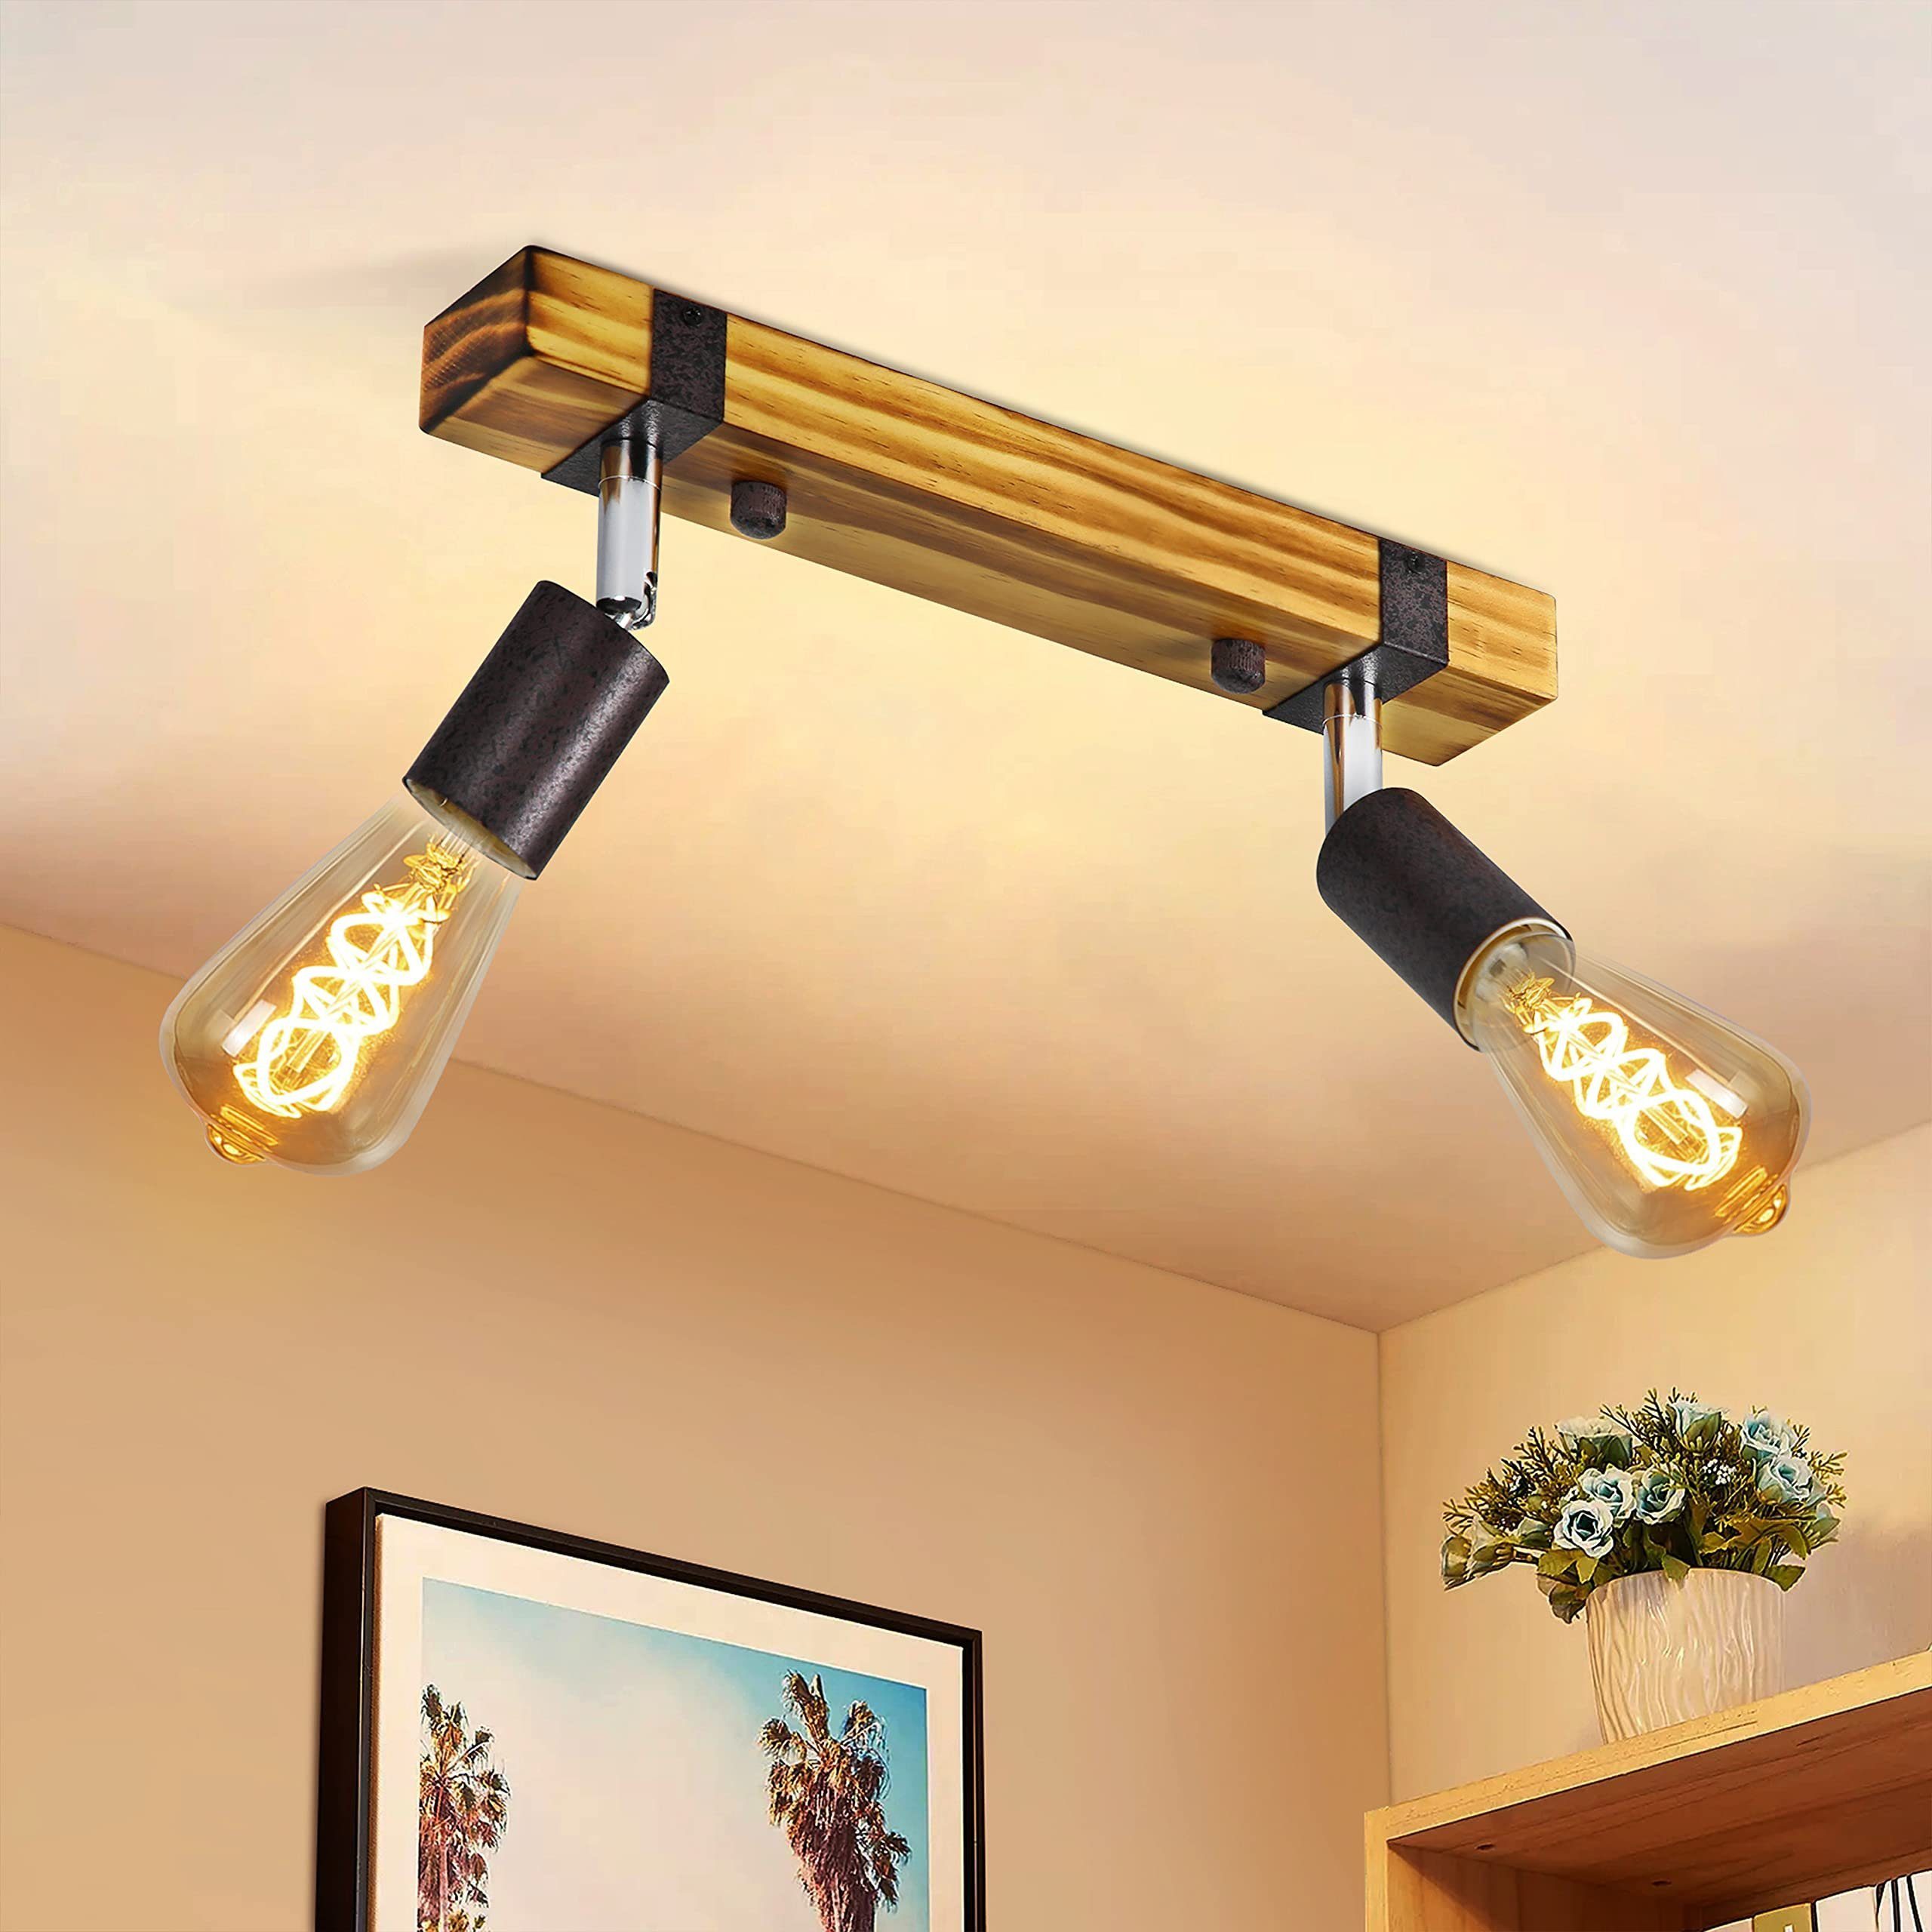 LED Deckenlampe Deckenspot Deckenleuchte Deckenstrahler Wohnzimmer kippbar 6er 